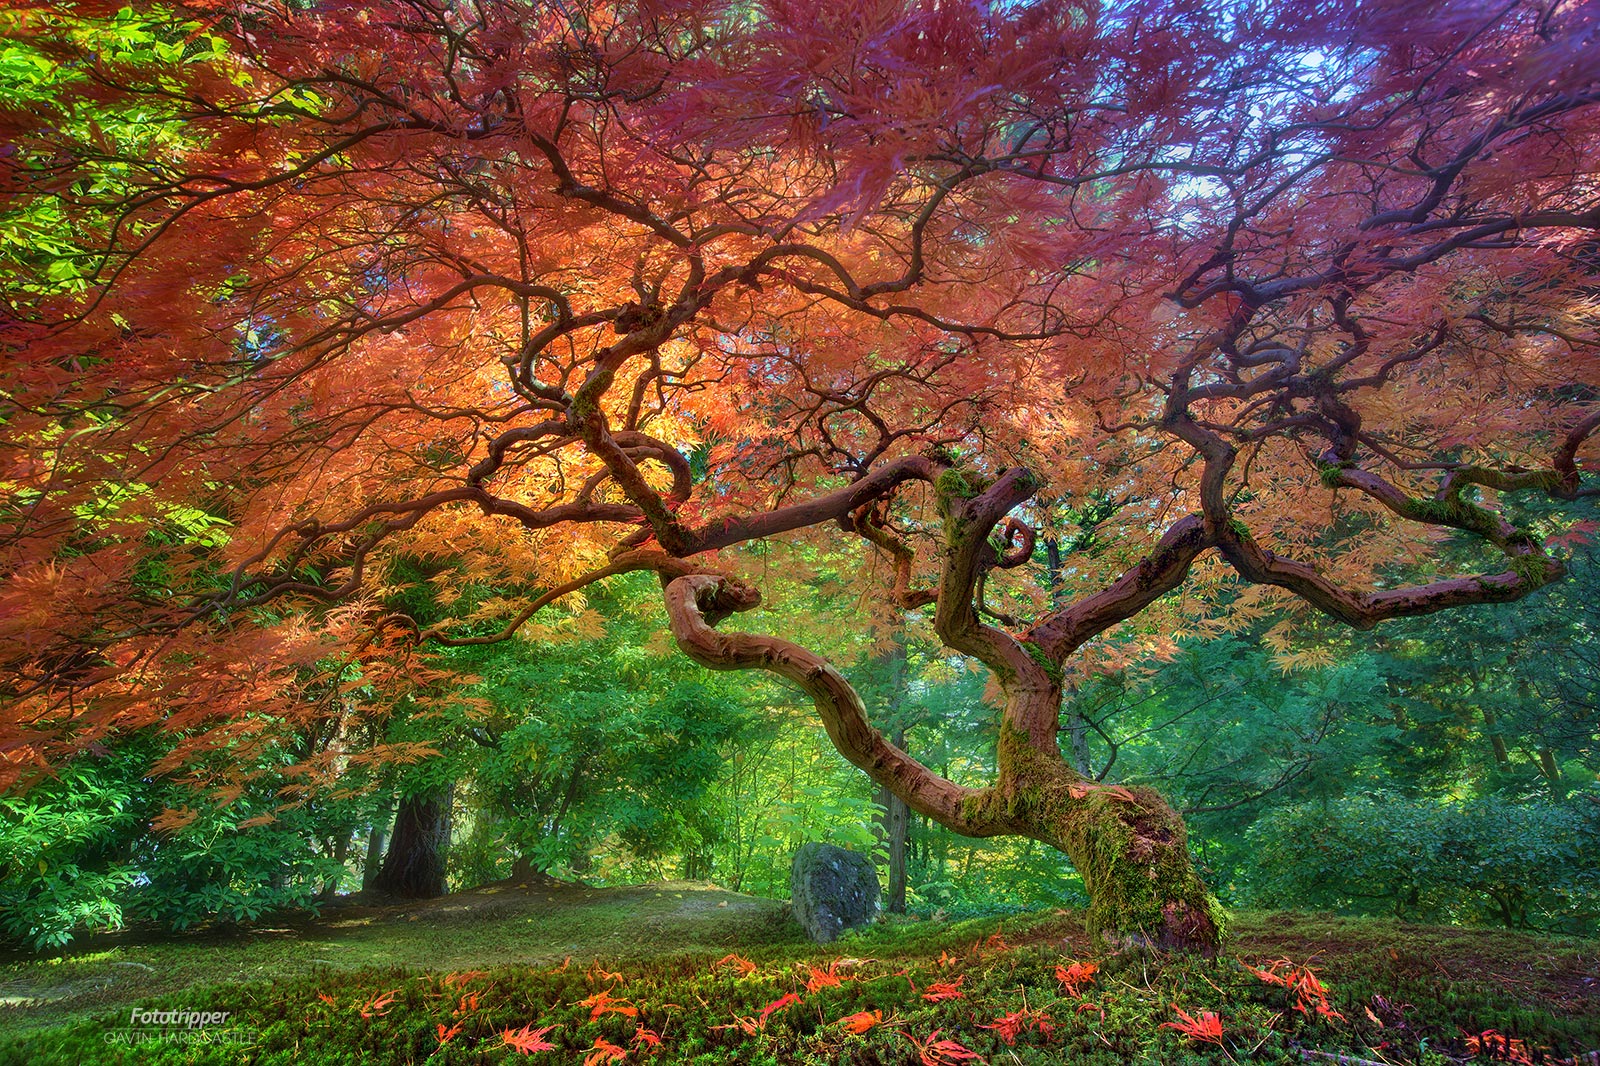 Portland Japanese Garden Photography Guide